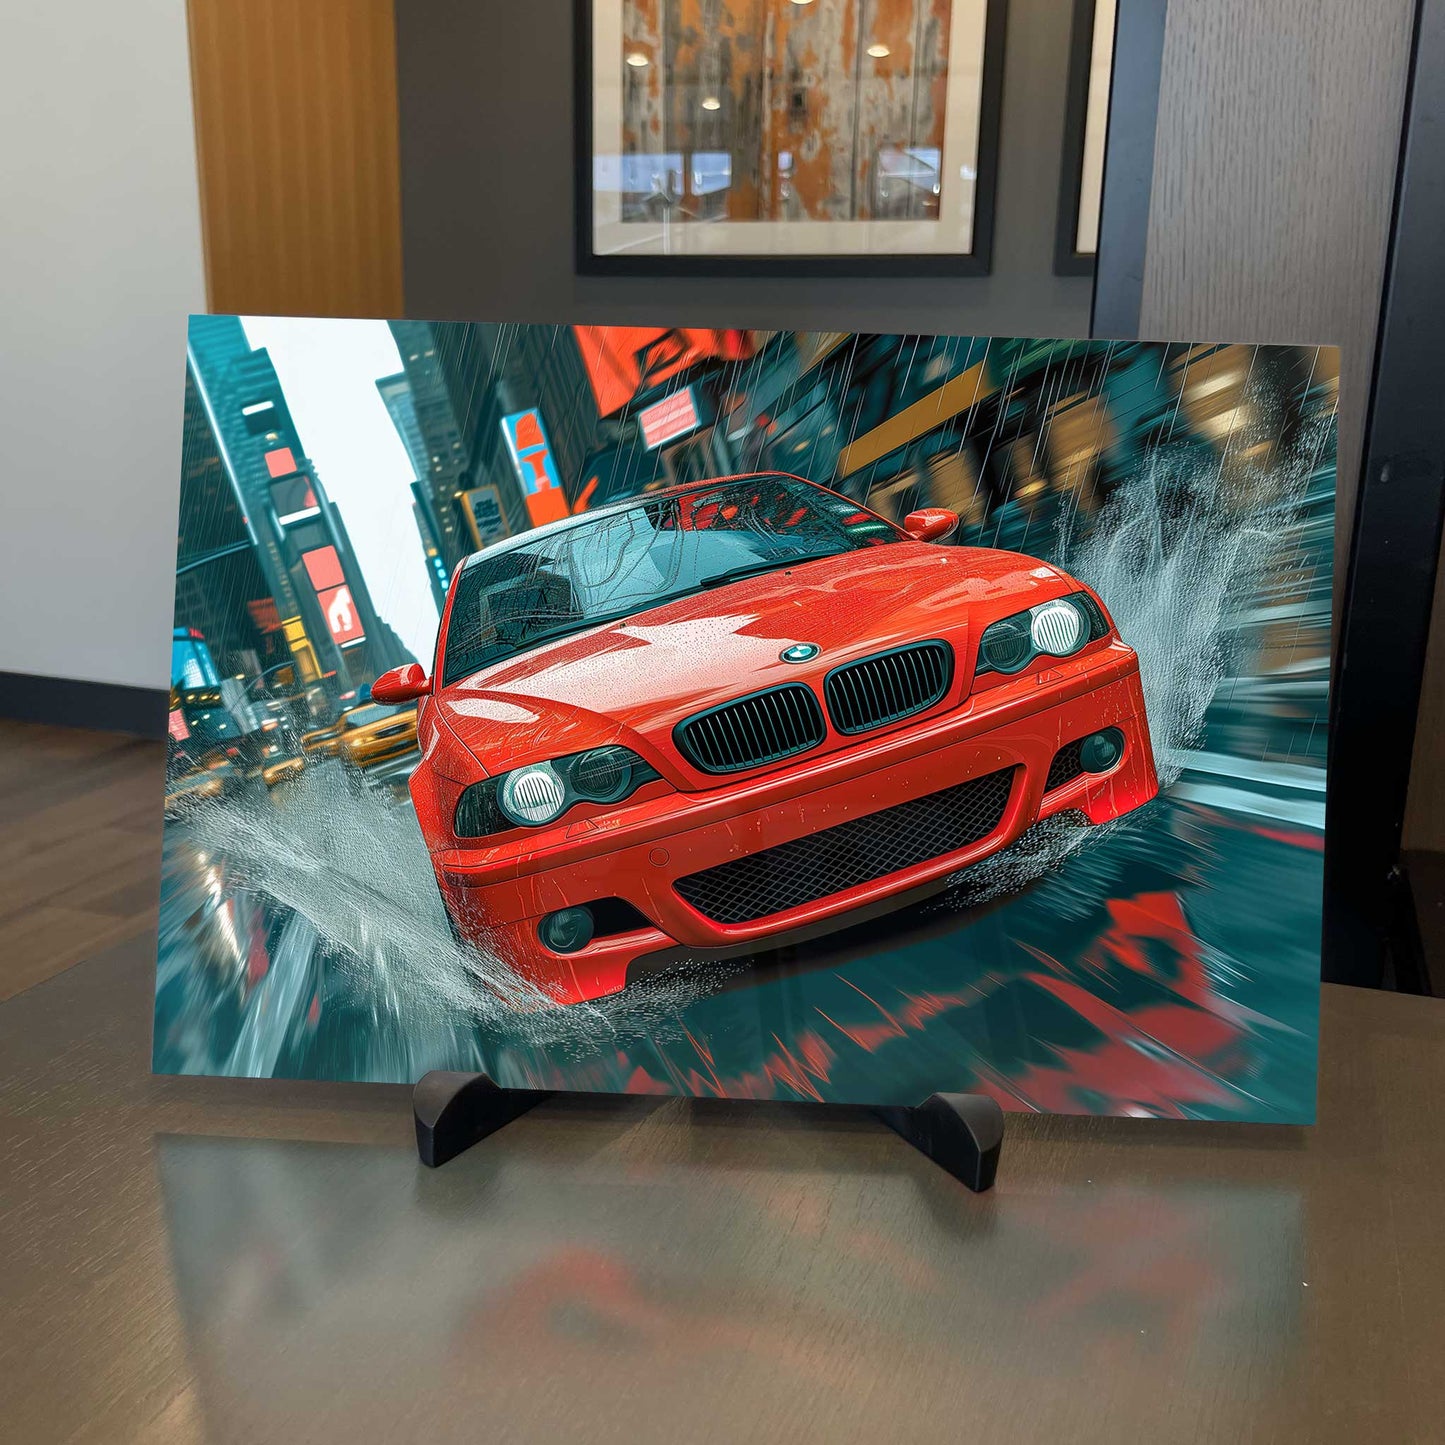 2005 BMW M5 Digital Painting on Metal